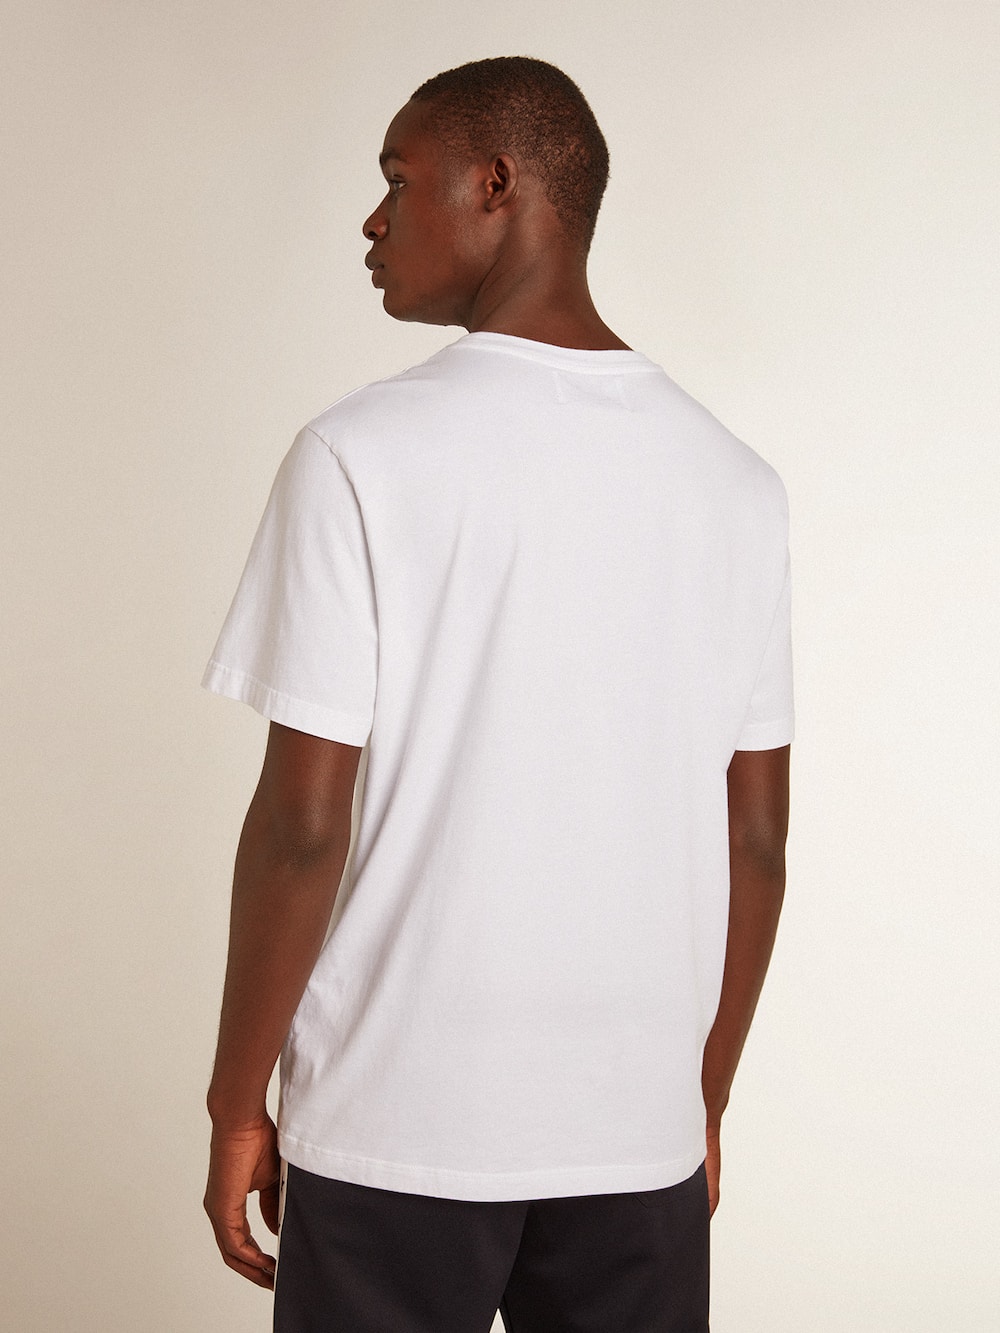 Golden Goose - T-shirt blanc pour homme avec étoile bleu foncé sur le devant in 